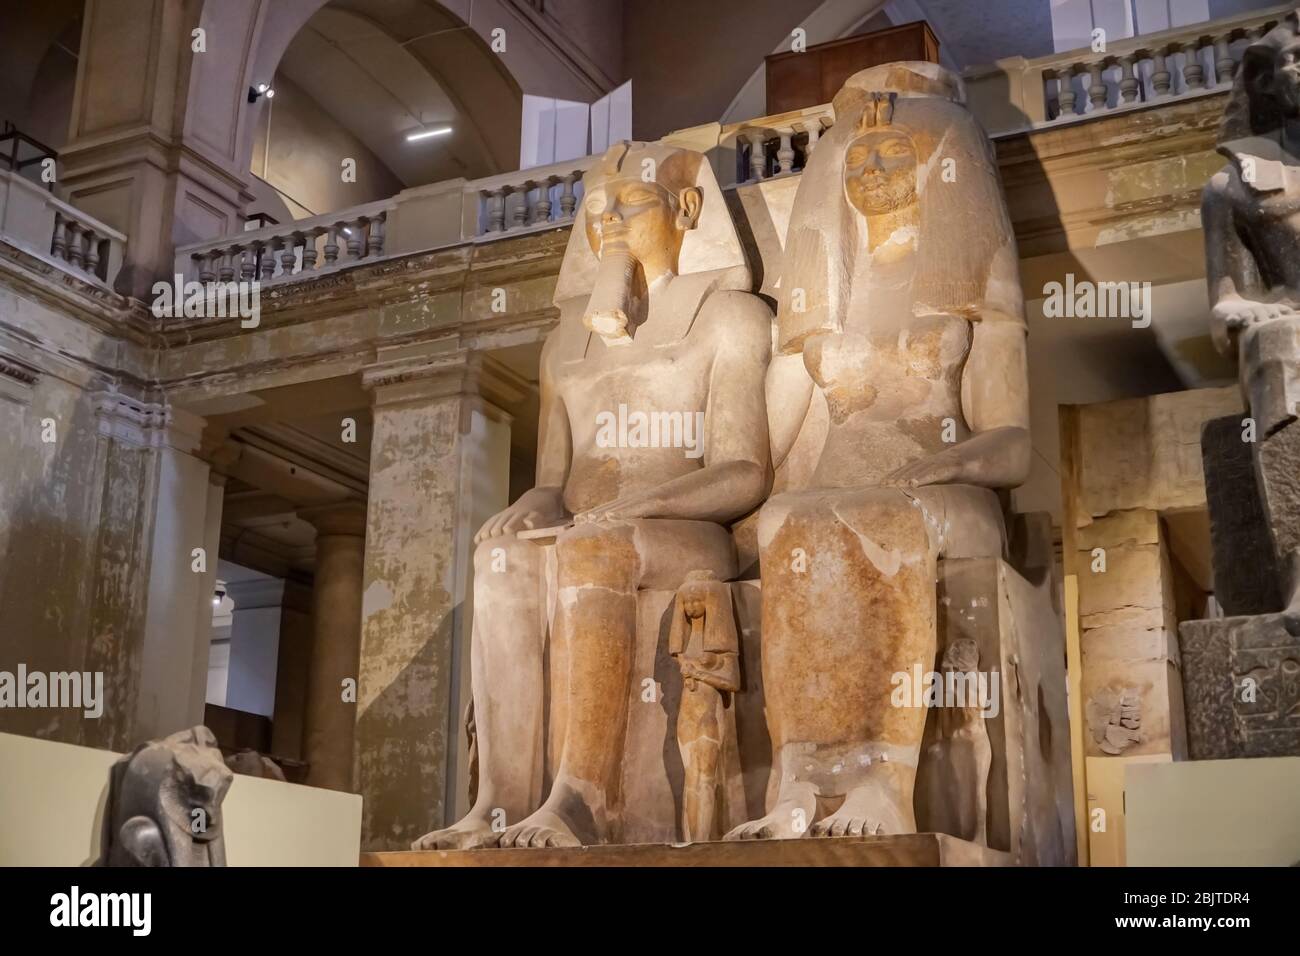 LE CAIRE, EGYPTE - 19 NOVEMBRE 2017 : statues monumentales d'Amenhotep III et de la reine Tiye au Musée des Antiquités égyptiennes Banque D'Images